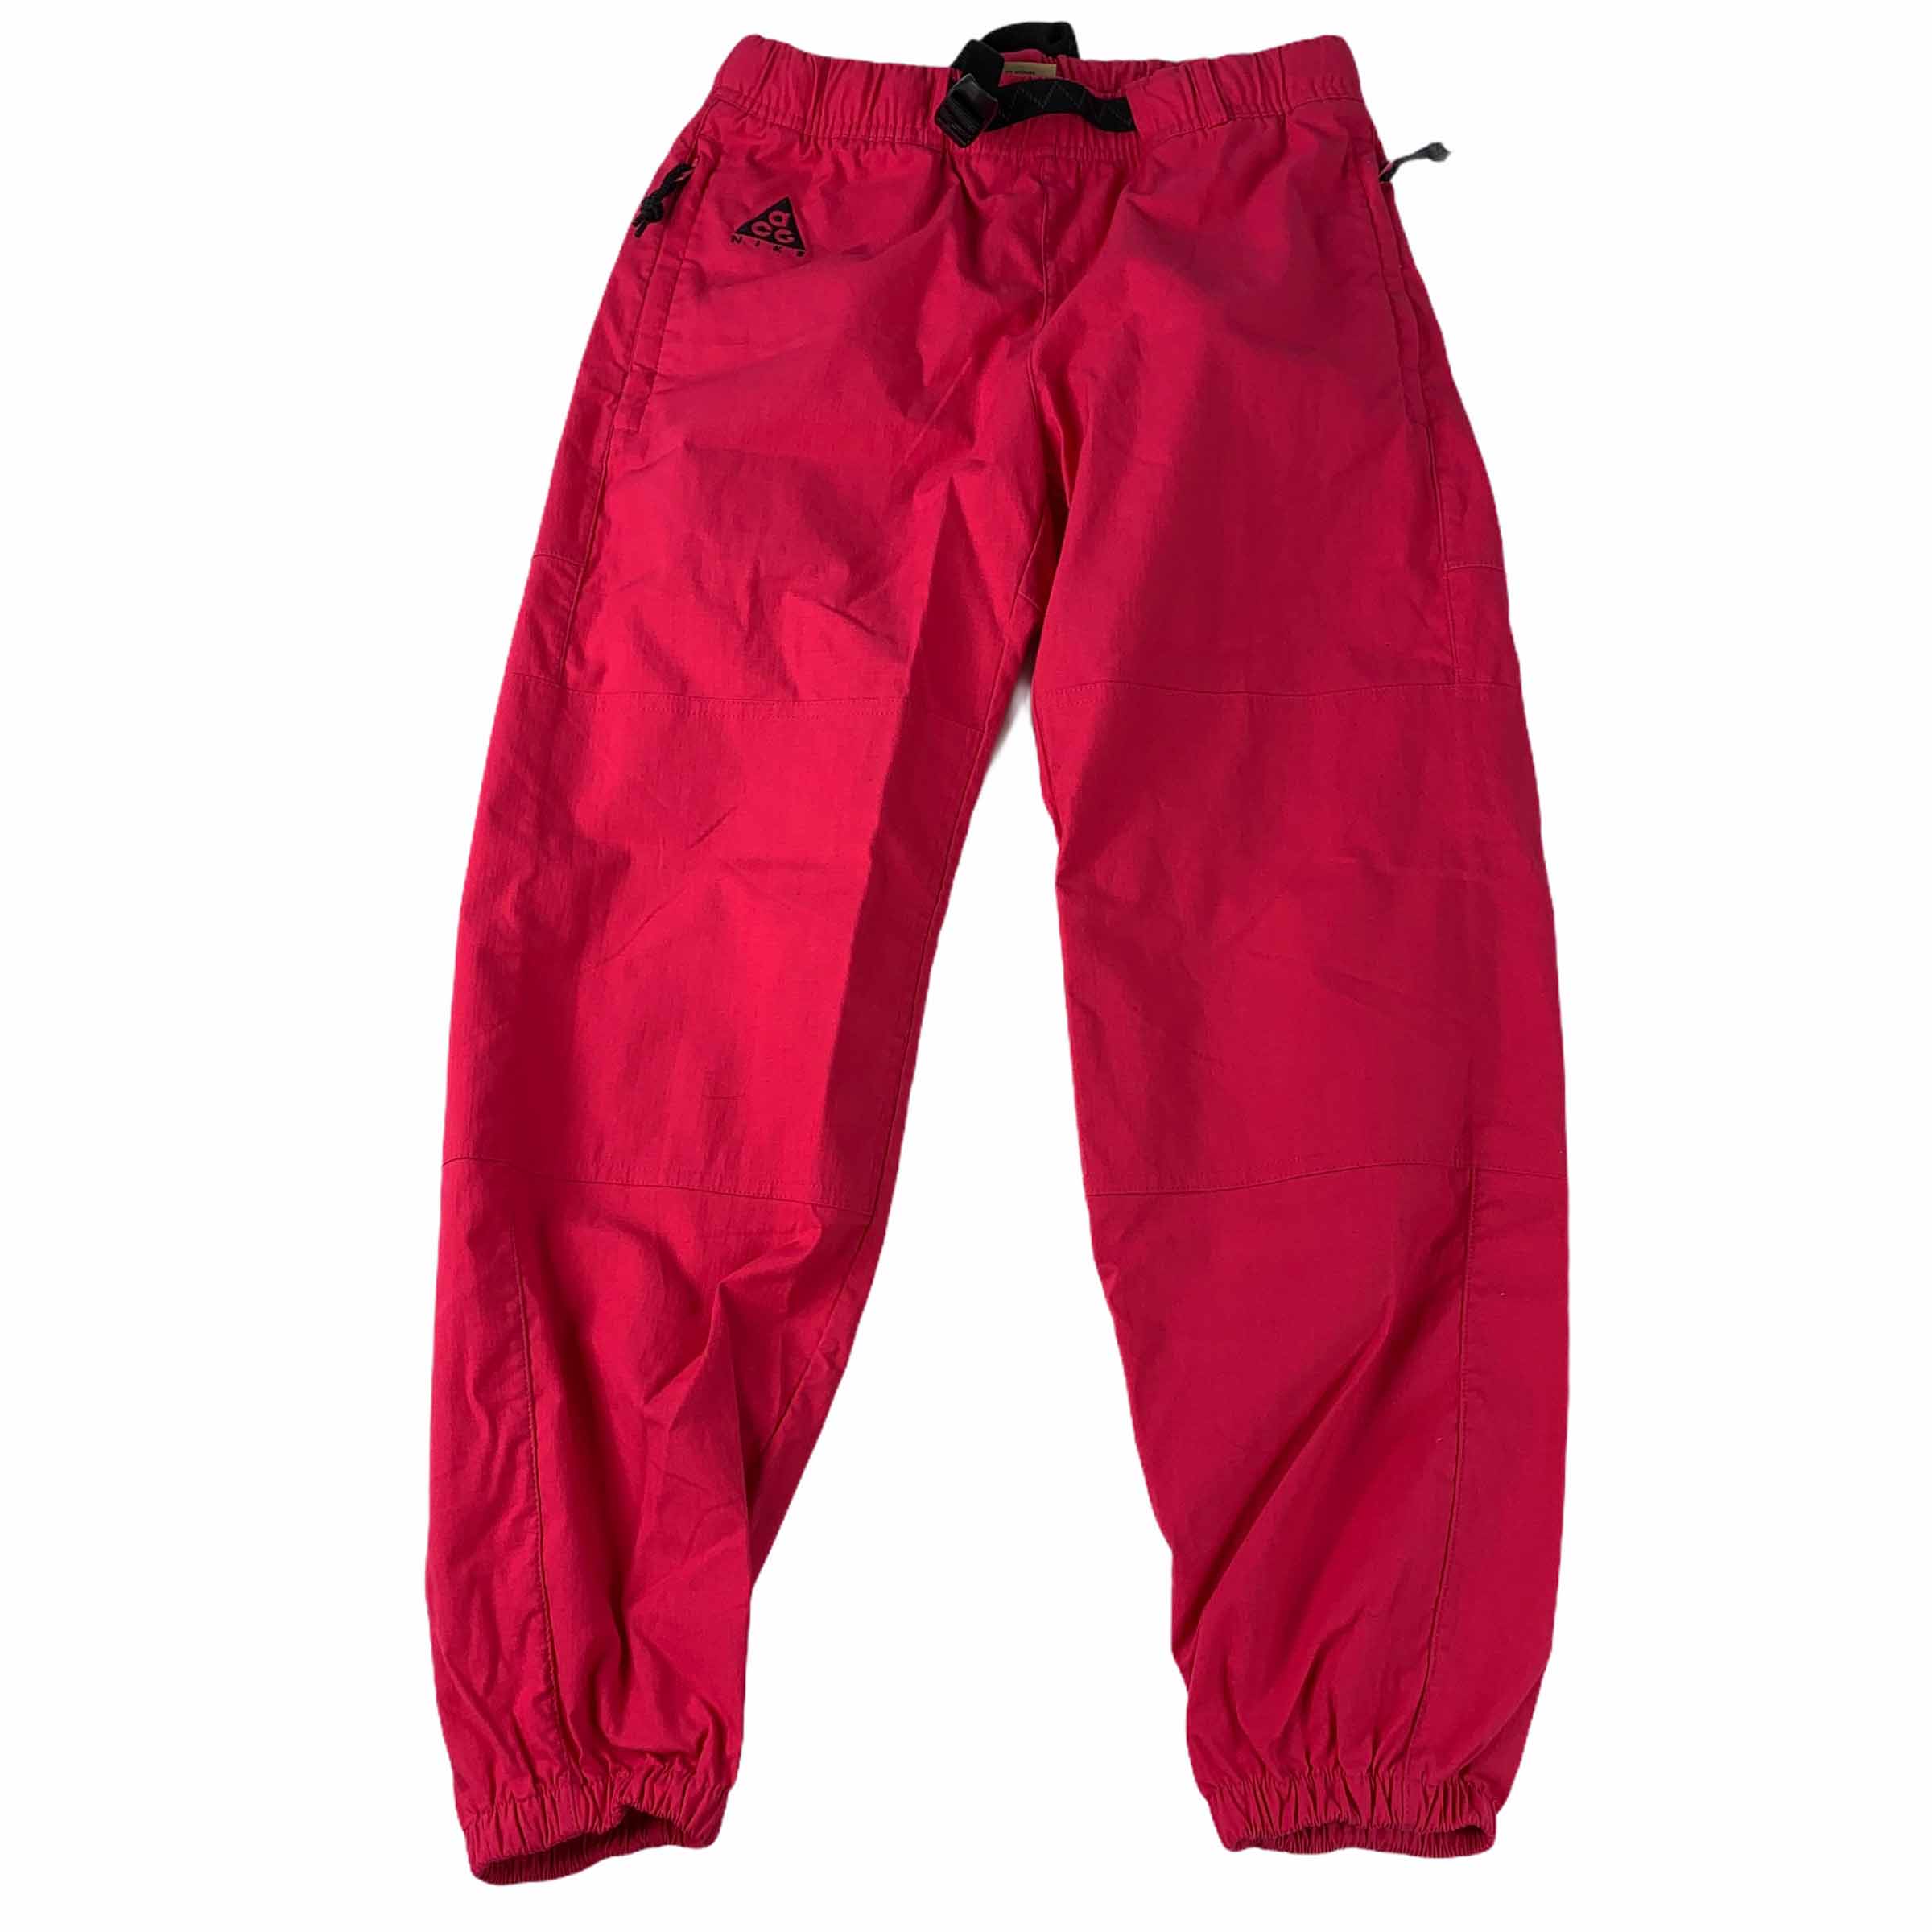 [Nike] ACG Track Pants PK - Size S